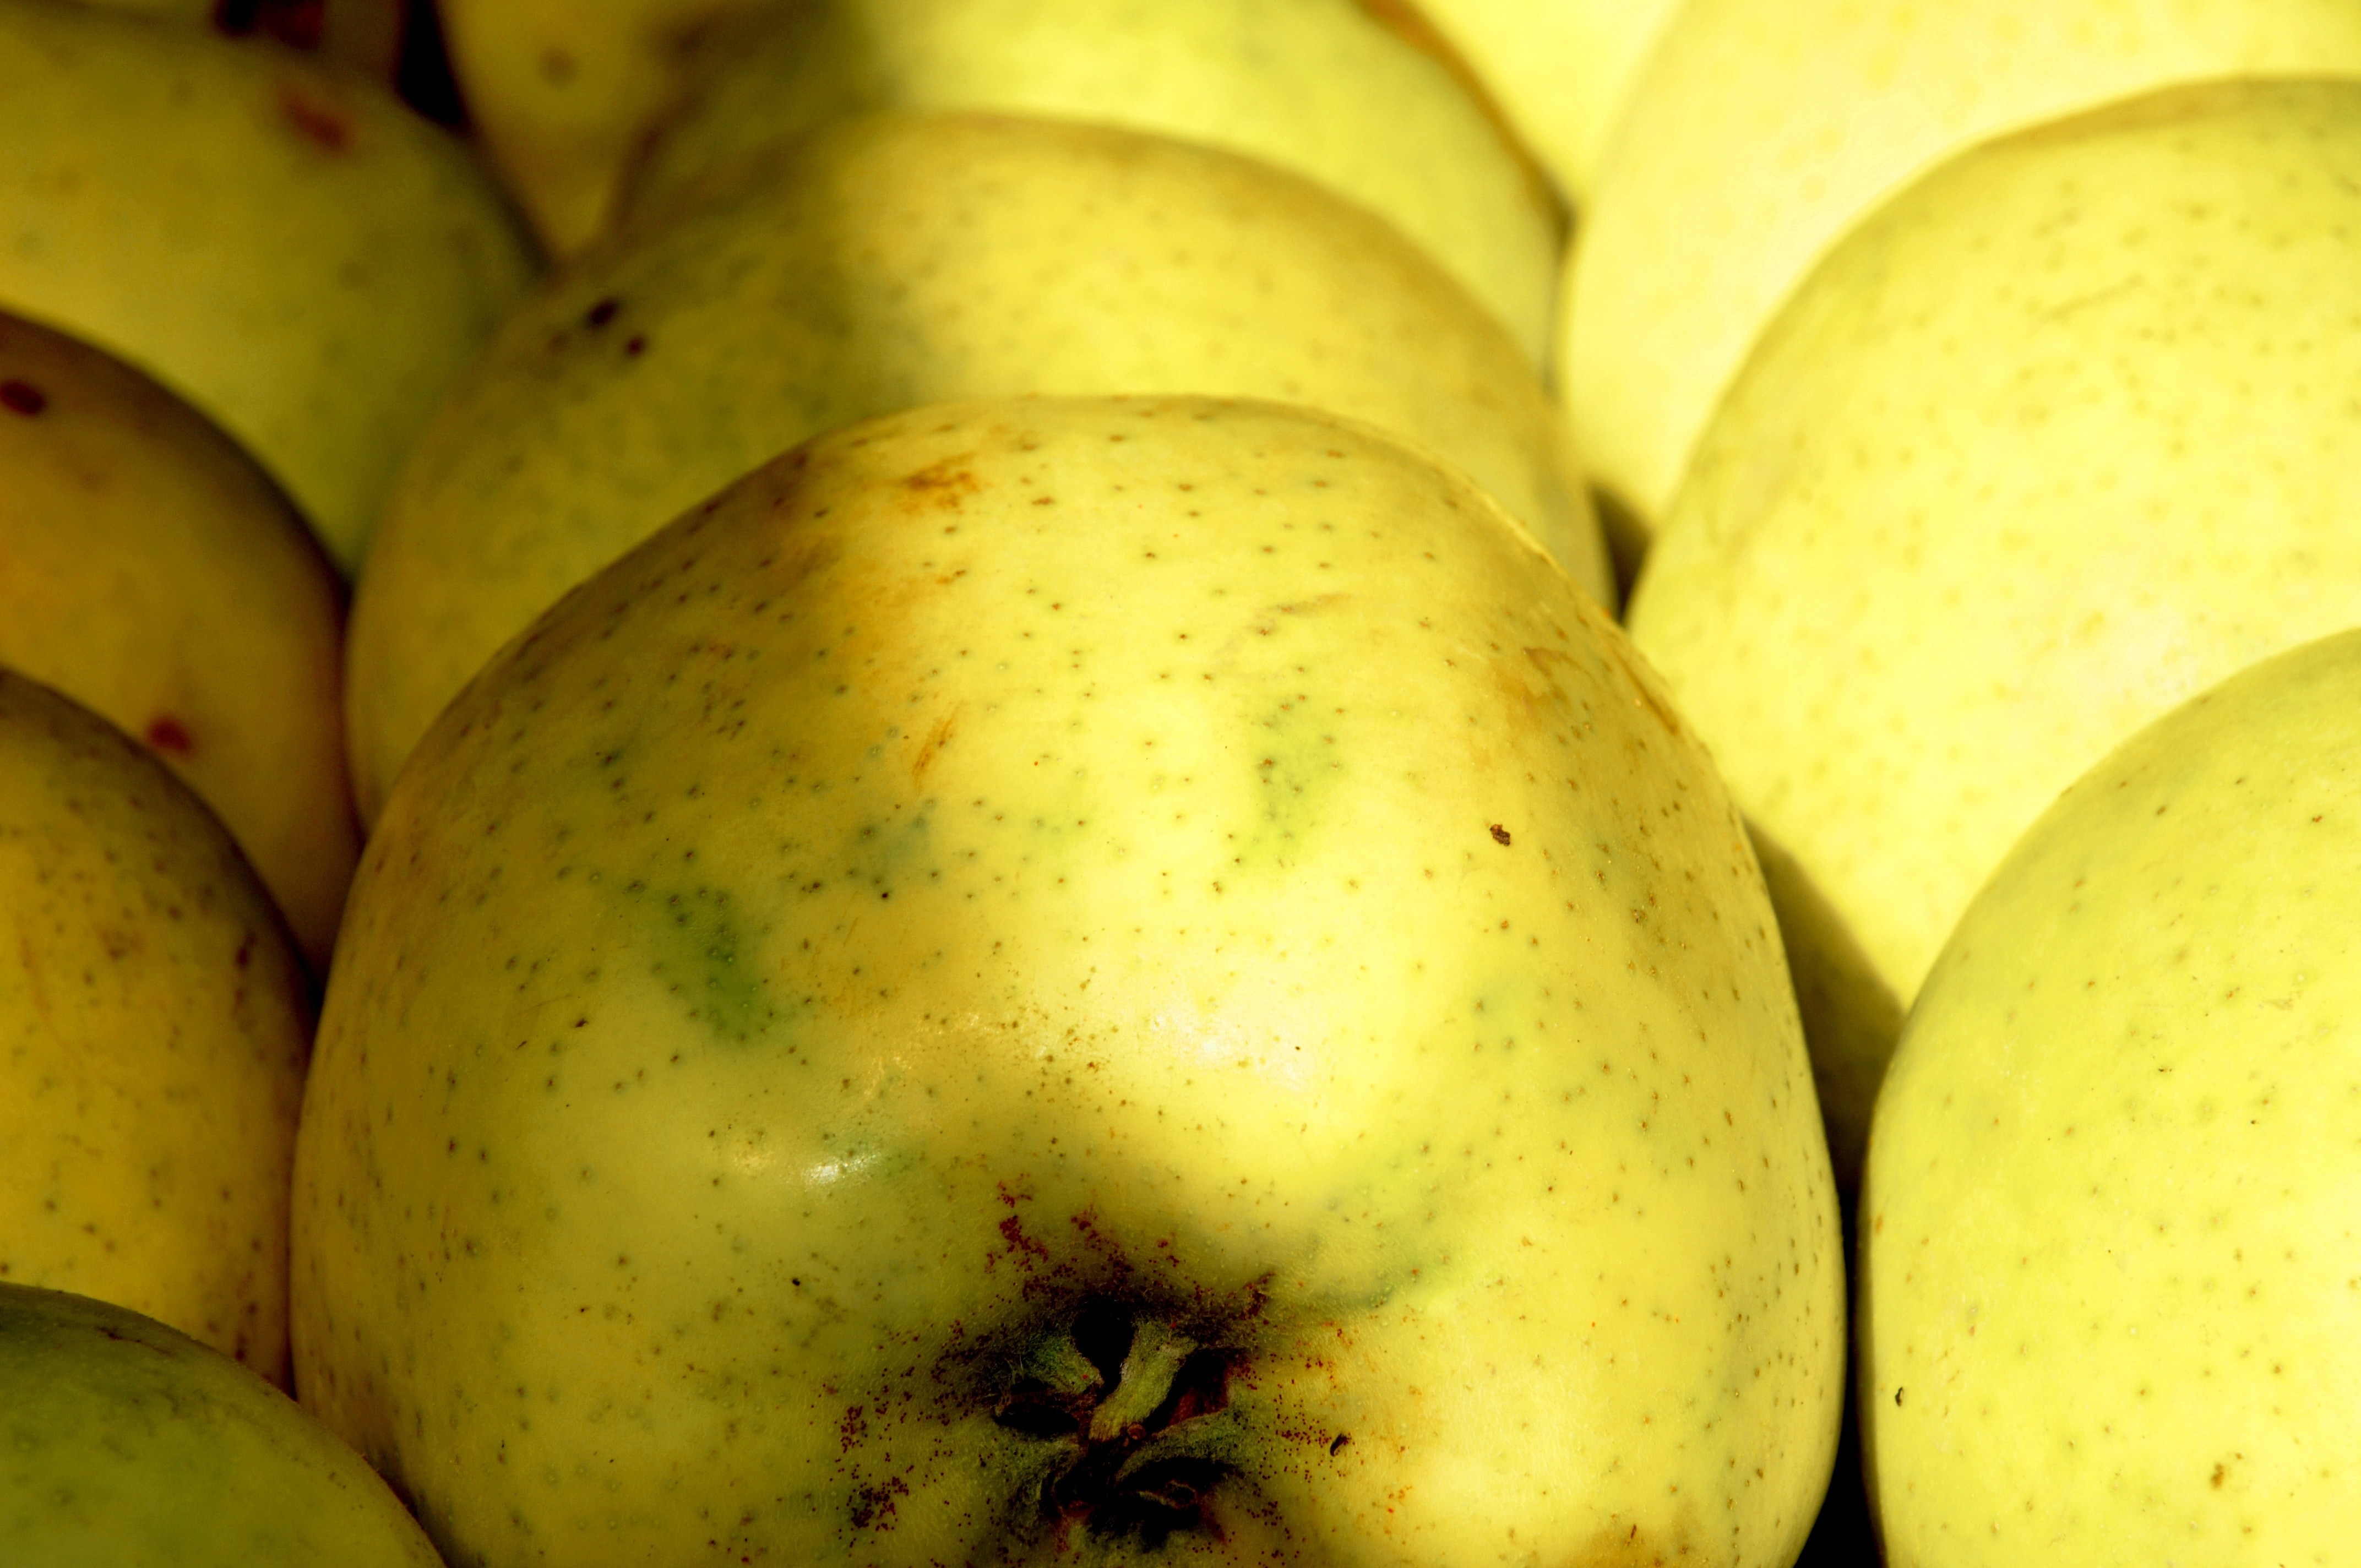 yellow oval fruit